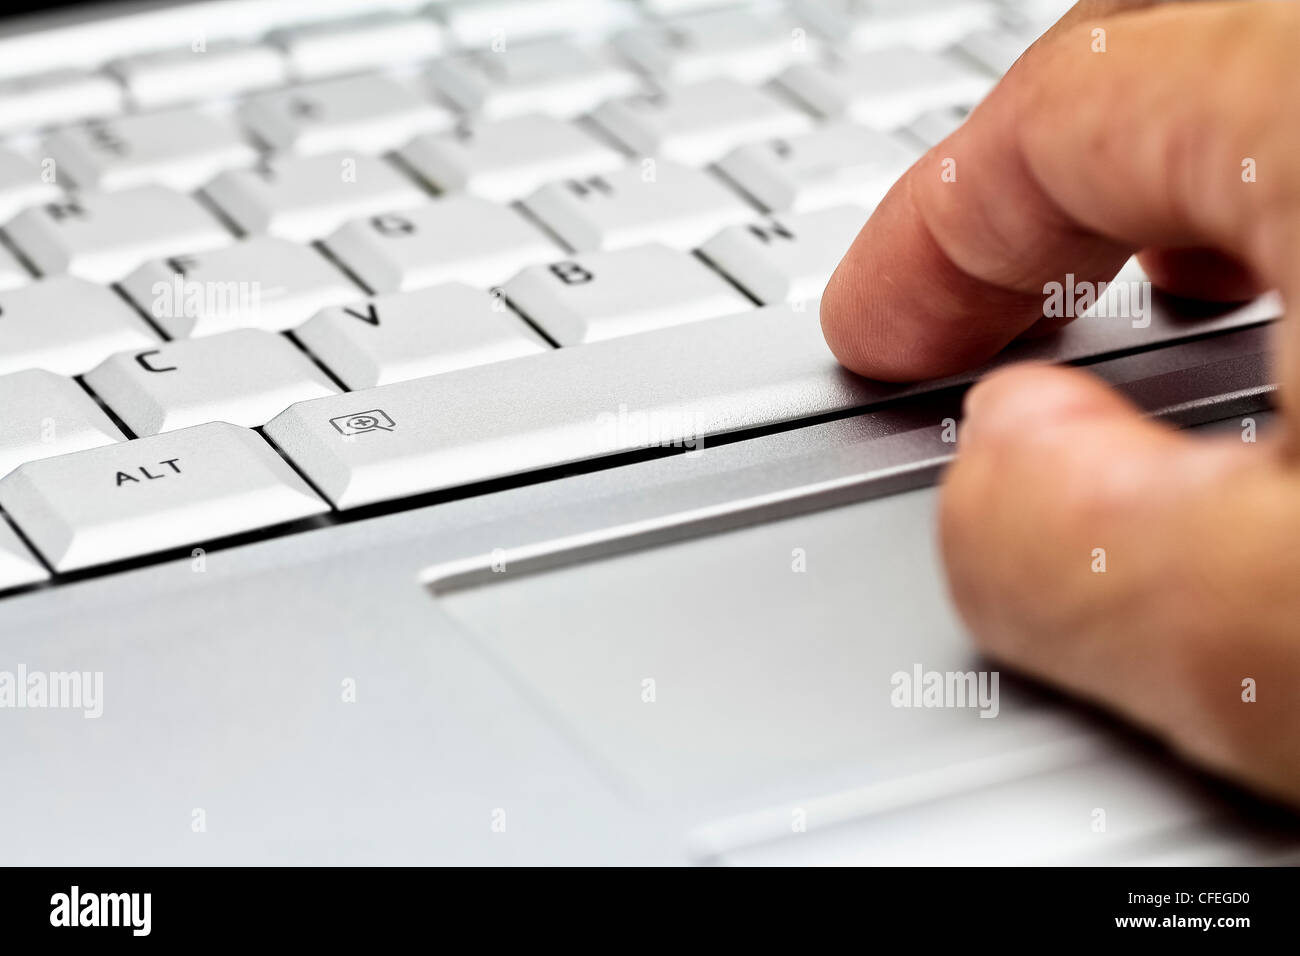 La mano derecha en el teclado portátil Foto de stock